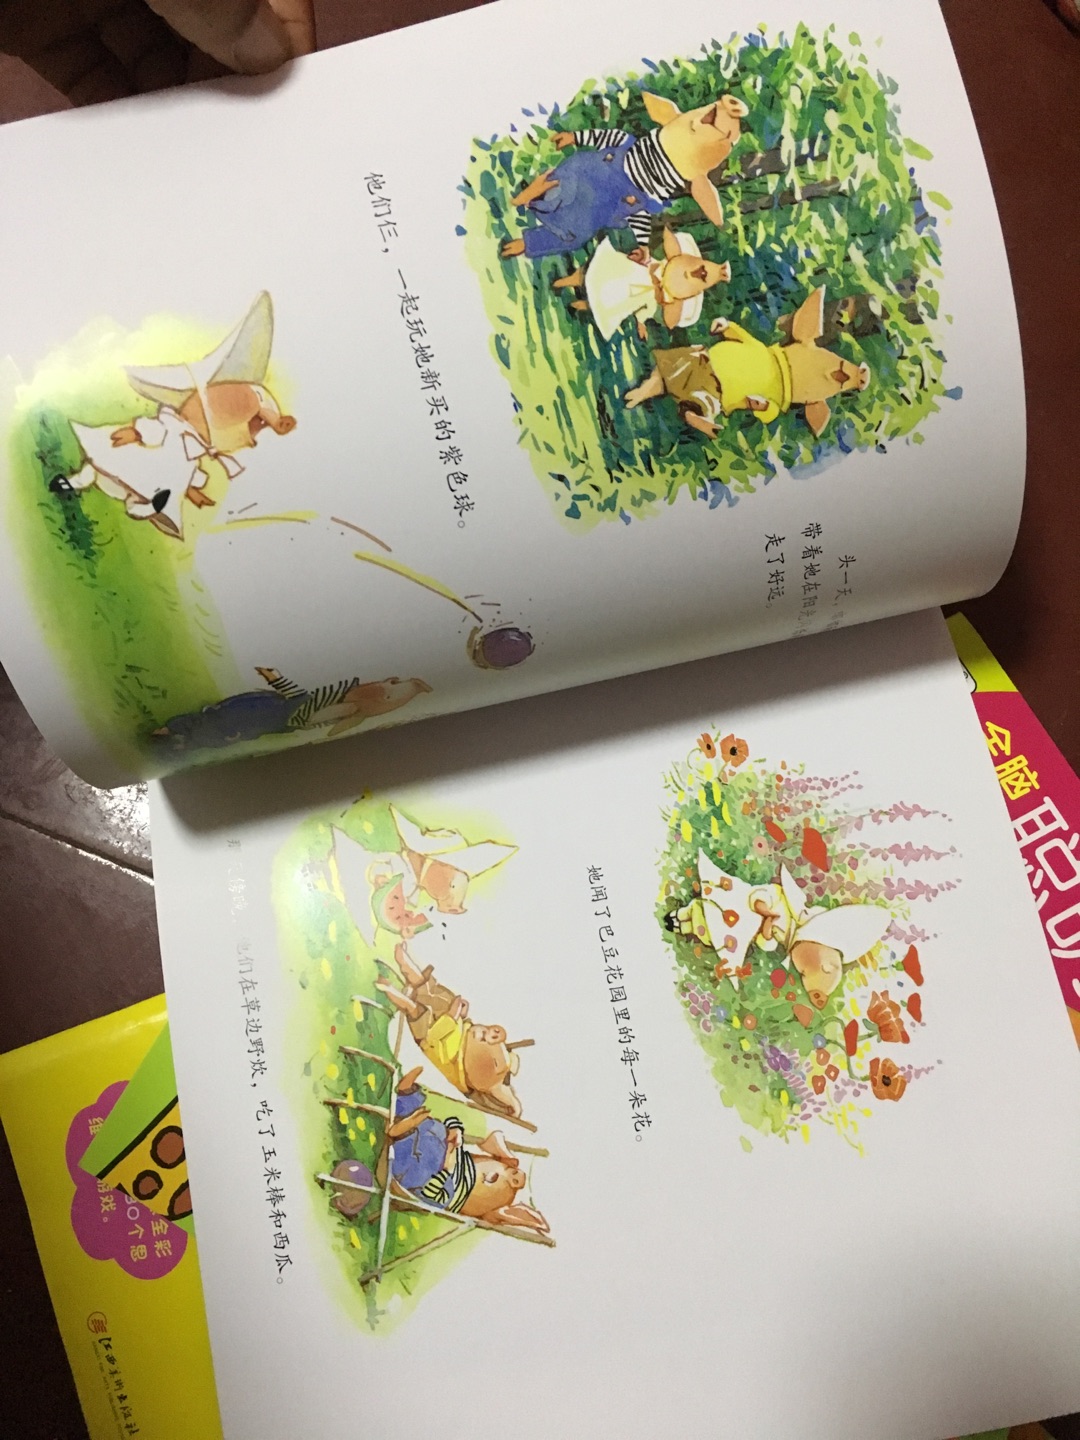 这套书很有趣，嘟嘟和巴豆是两个不同类型孩子的代表，孩子两岁，听起来有点费力，大一点应该能懂了，很喜欢里面的插画，画面很美。